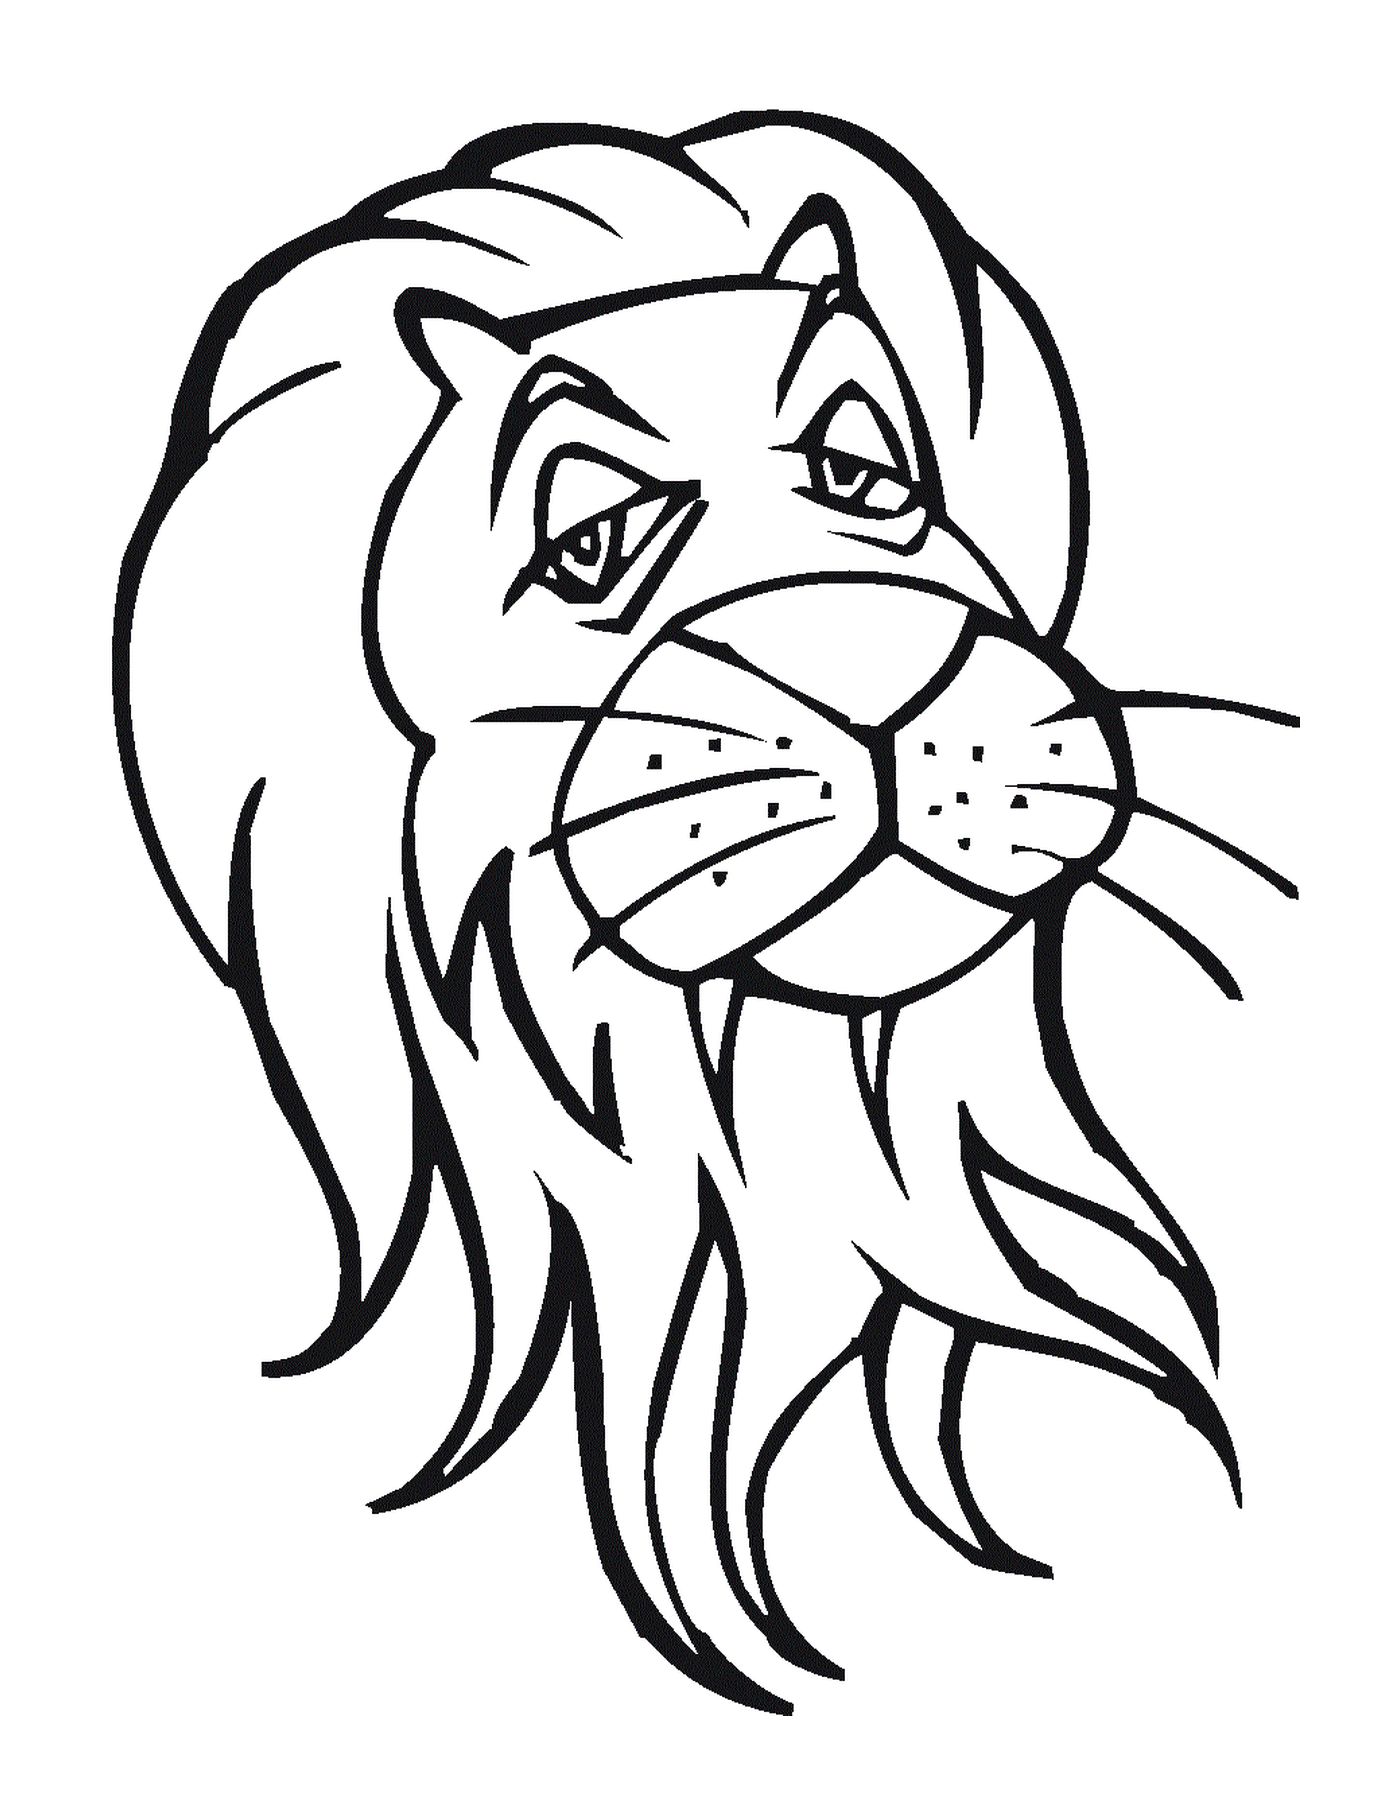  A cabeça nobre de um leão 